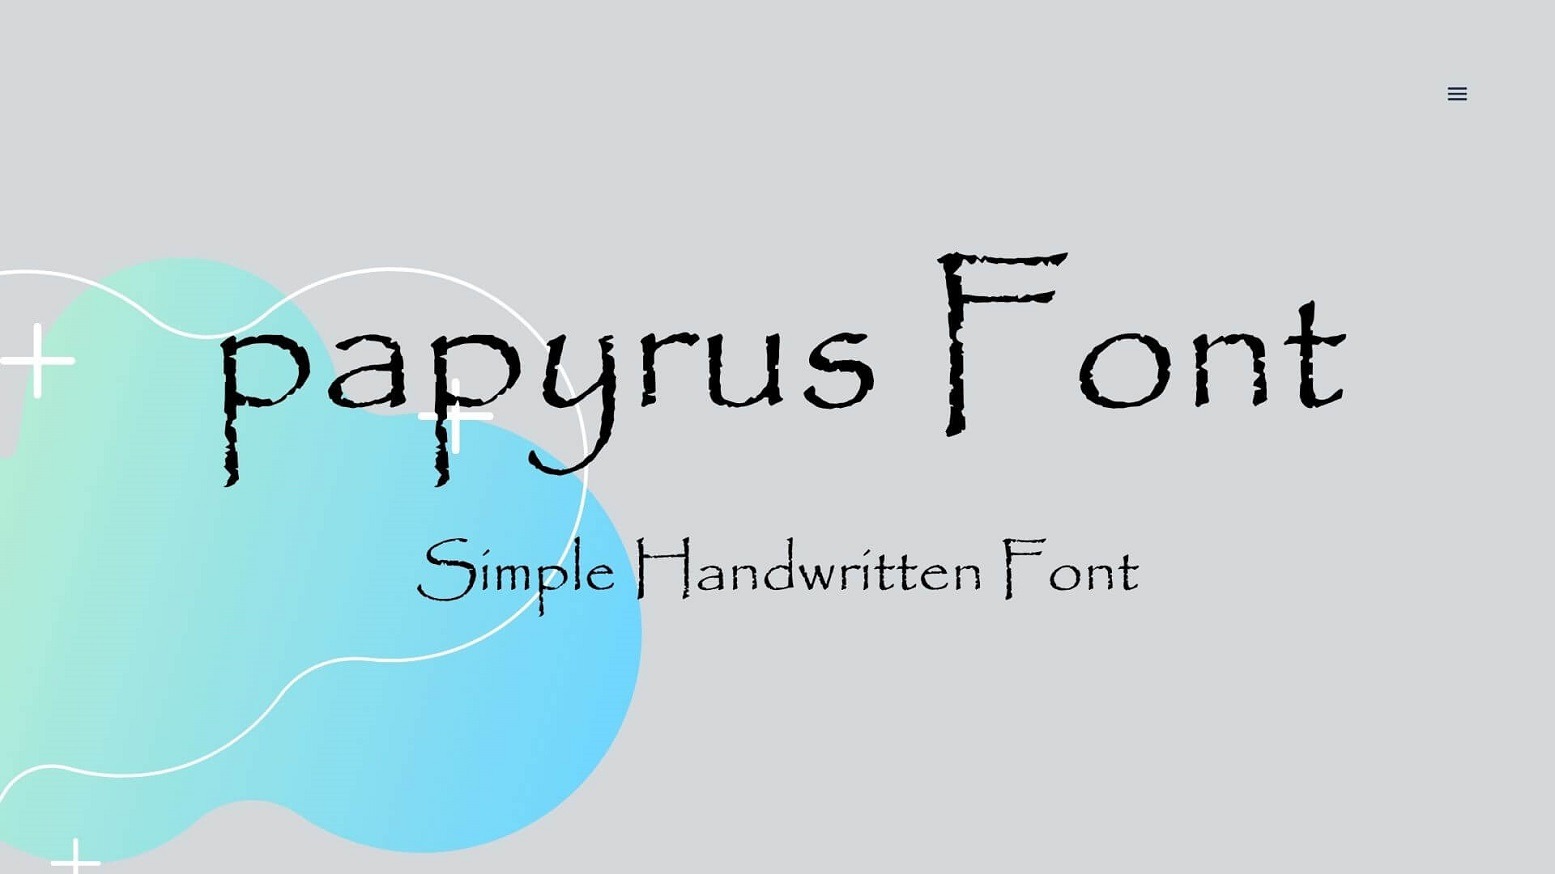 Với font chữ Papyrus miễn phí, bạn có thể tạo ra những tác phẩm nghệ thuật độc đáo và tinh tế. Cùng thử sức với những bức ảnh, poster hoặc thiết kế đồ họa độc đáo với font chữ Papyrus.